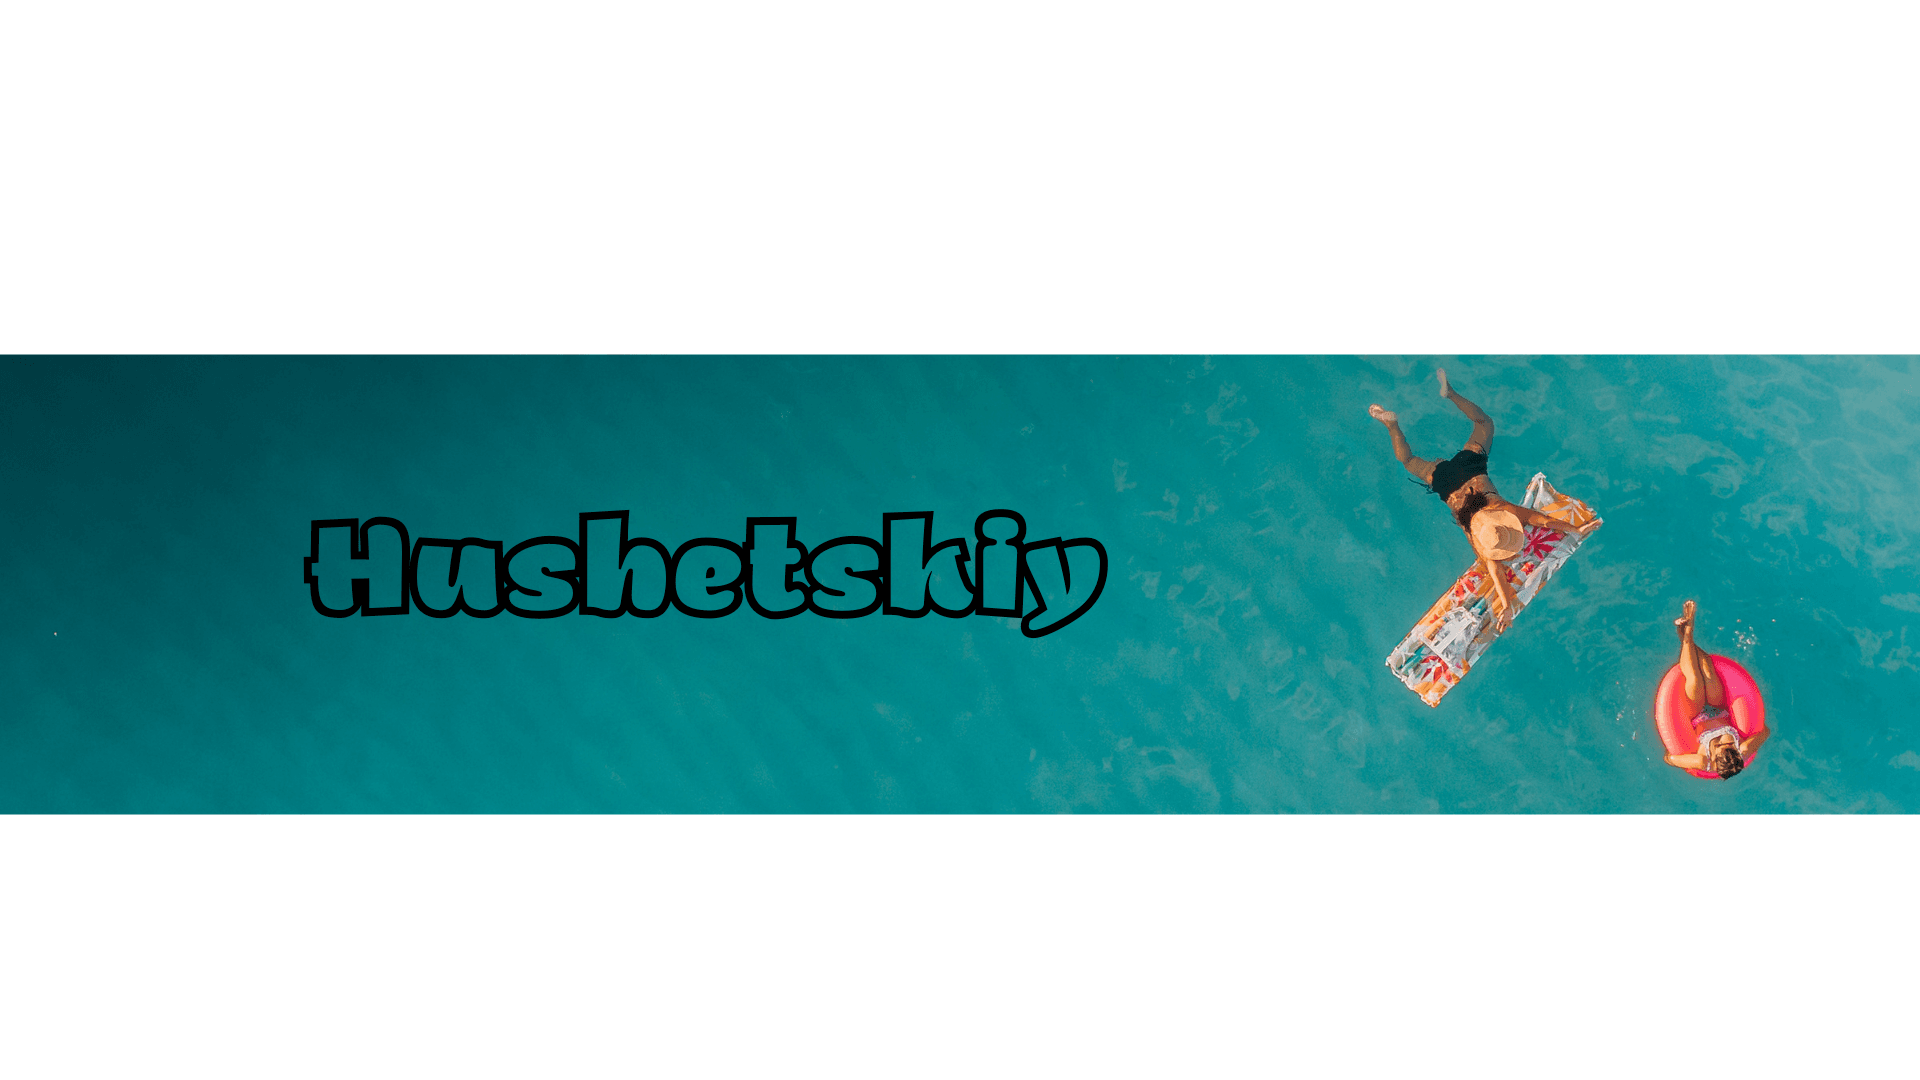 Hushetskiy banner